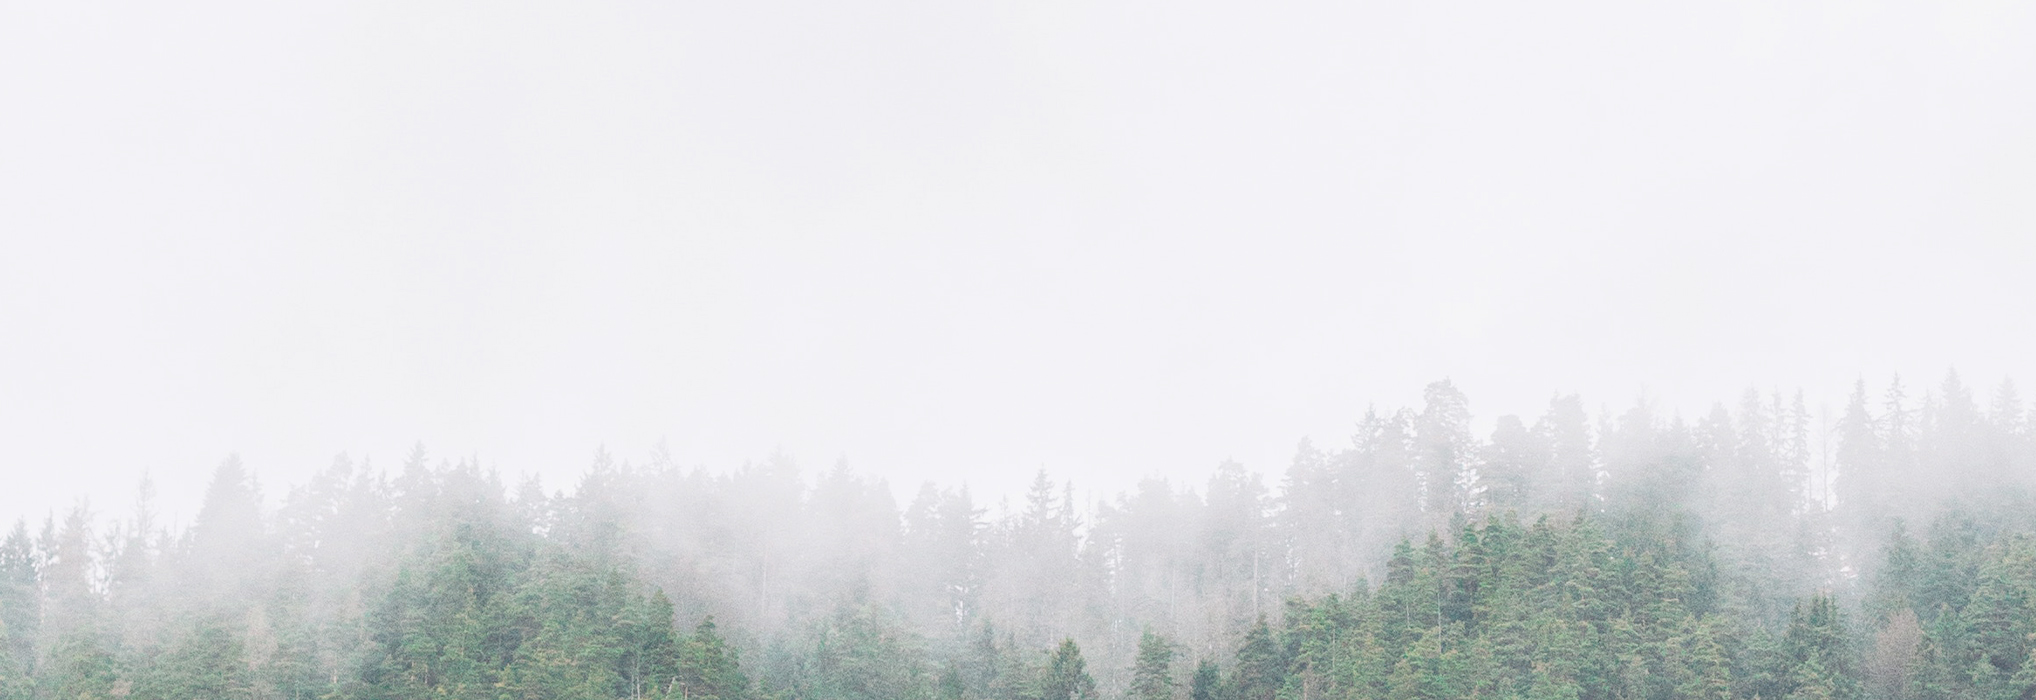 A foggy forest skyline